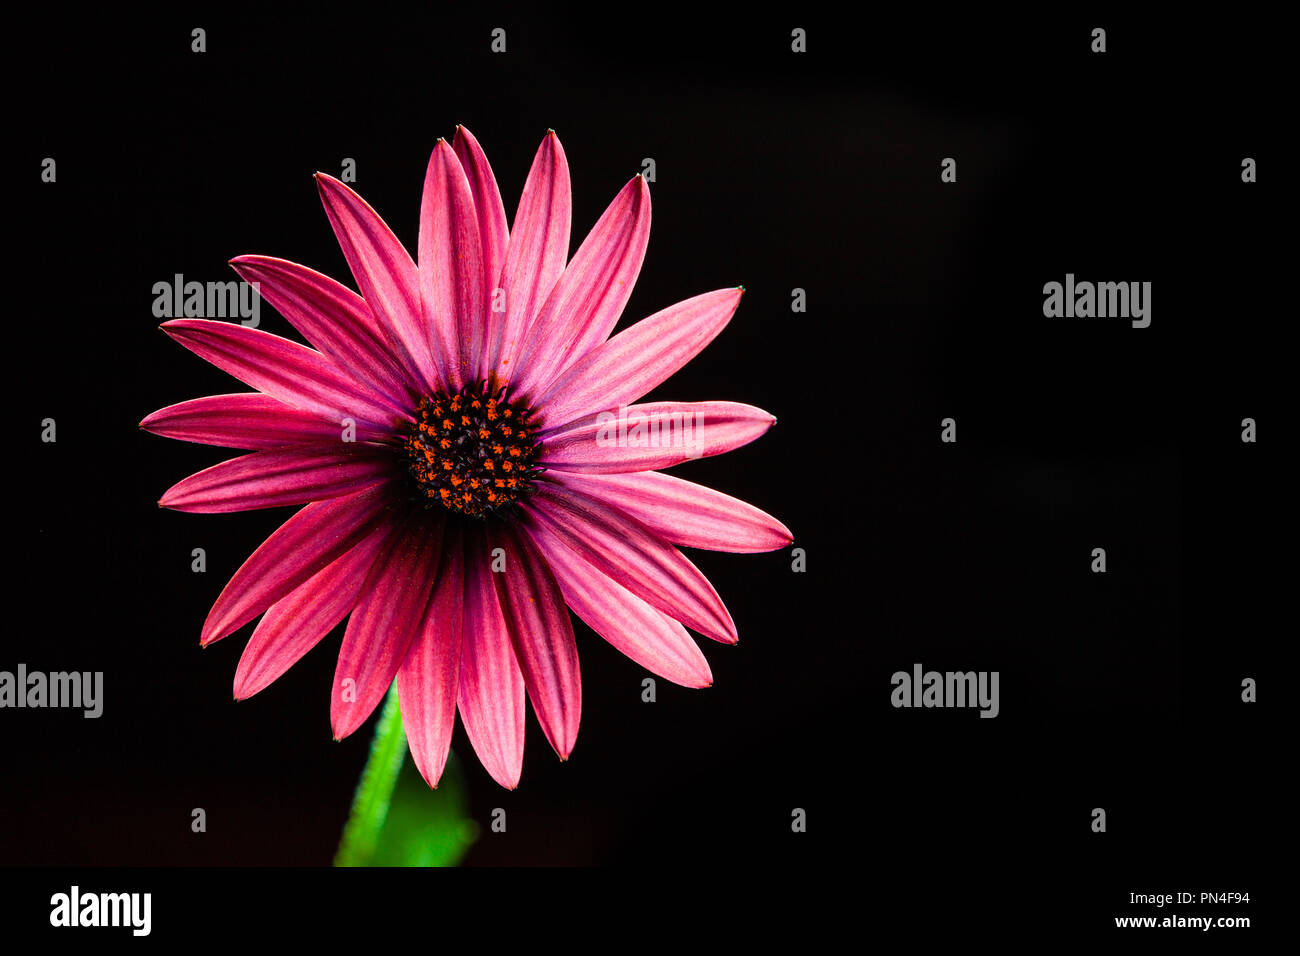 Rouge vif African daisy flower sur noir - studio shot with copy space Banque D'Images